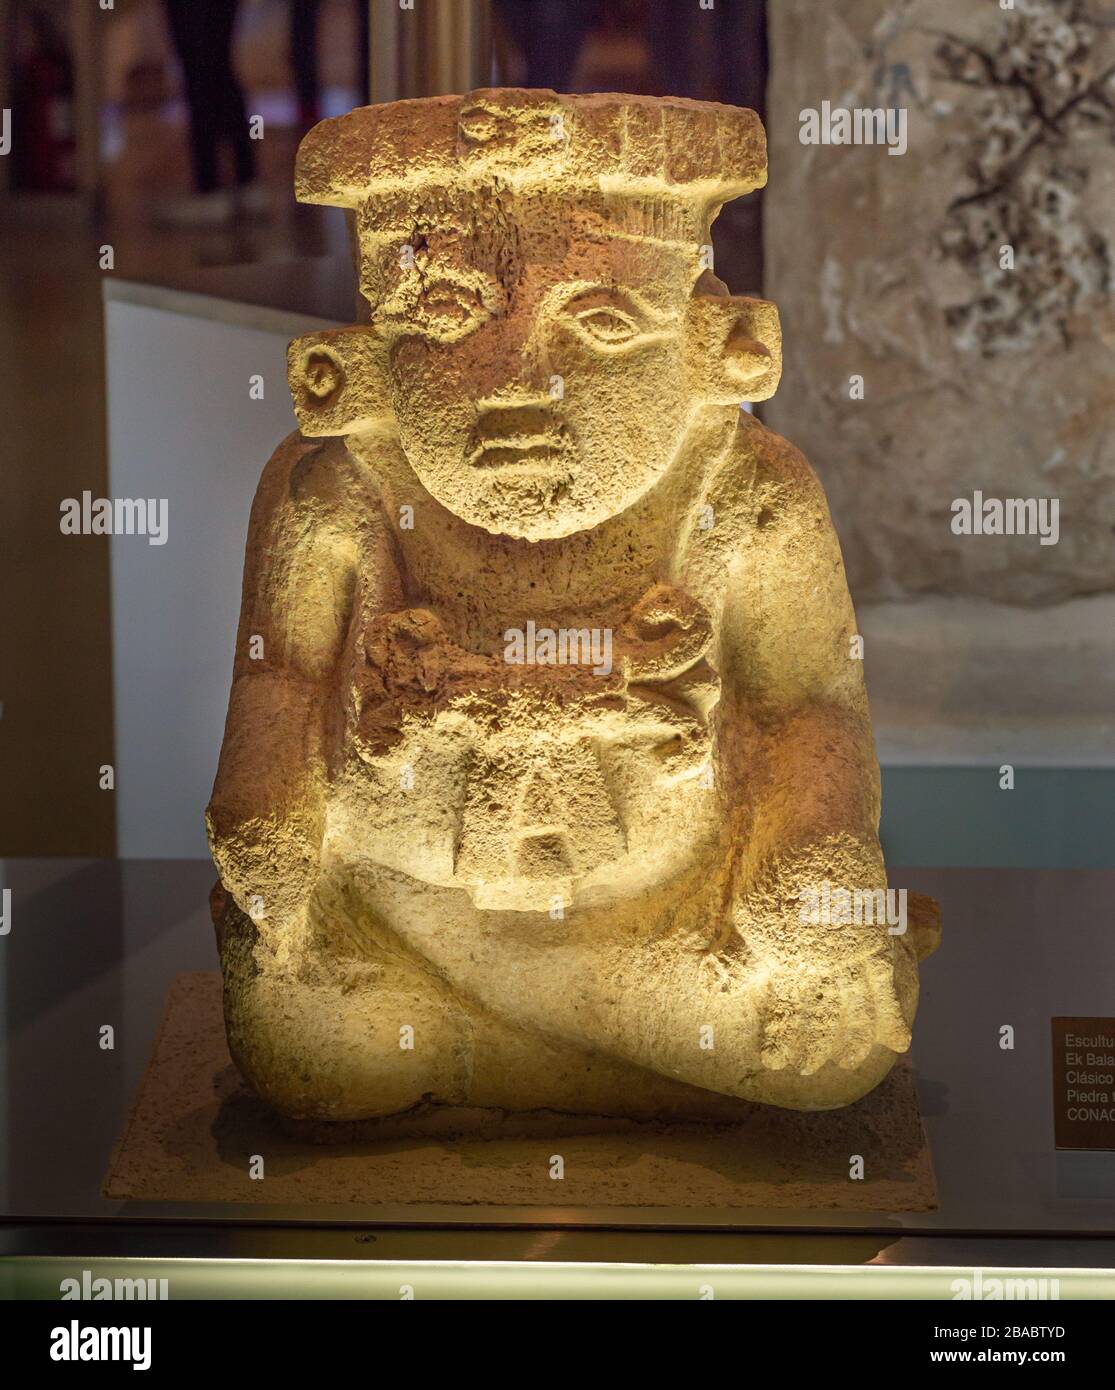 Sculpture en pierre maya d'une figure assise, trouvée à Ek Balam, de la fin de la période classique. Museo Maya, Merida, Yucatan, Mexique. Banque D'Images